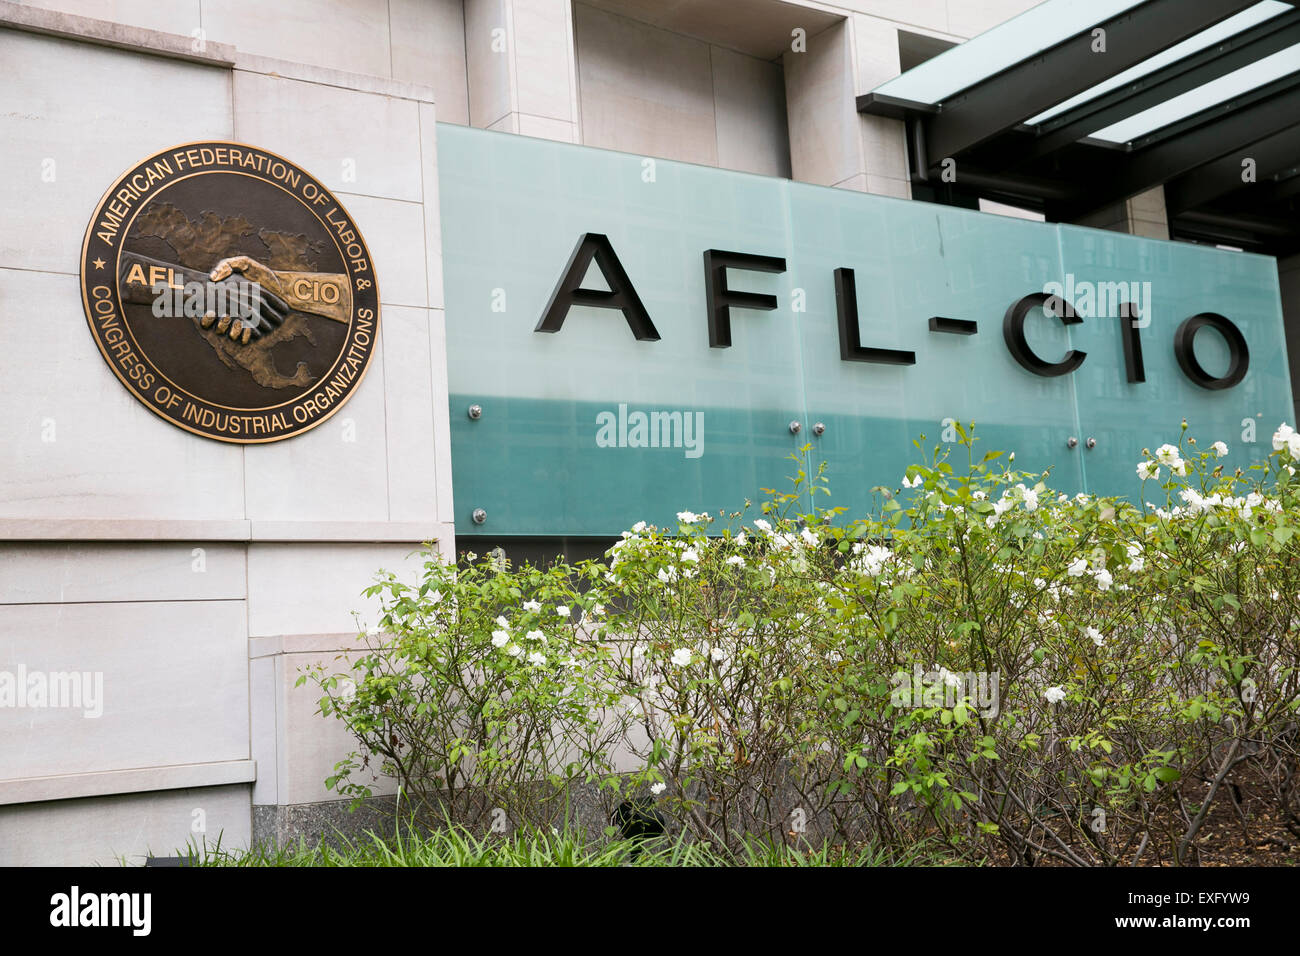 Un logo segno al di fuori della sede della federazione americana del lavoro e Congresso delle organizzazioni industriali (AFL-CIO) ho Foto Stock